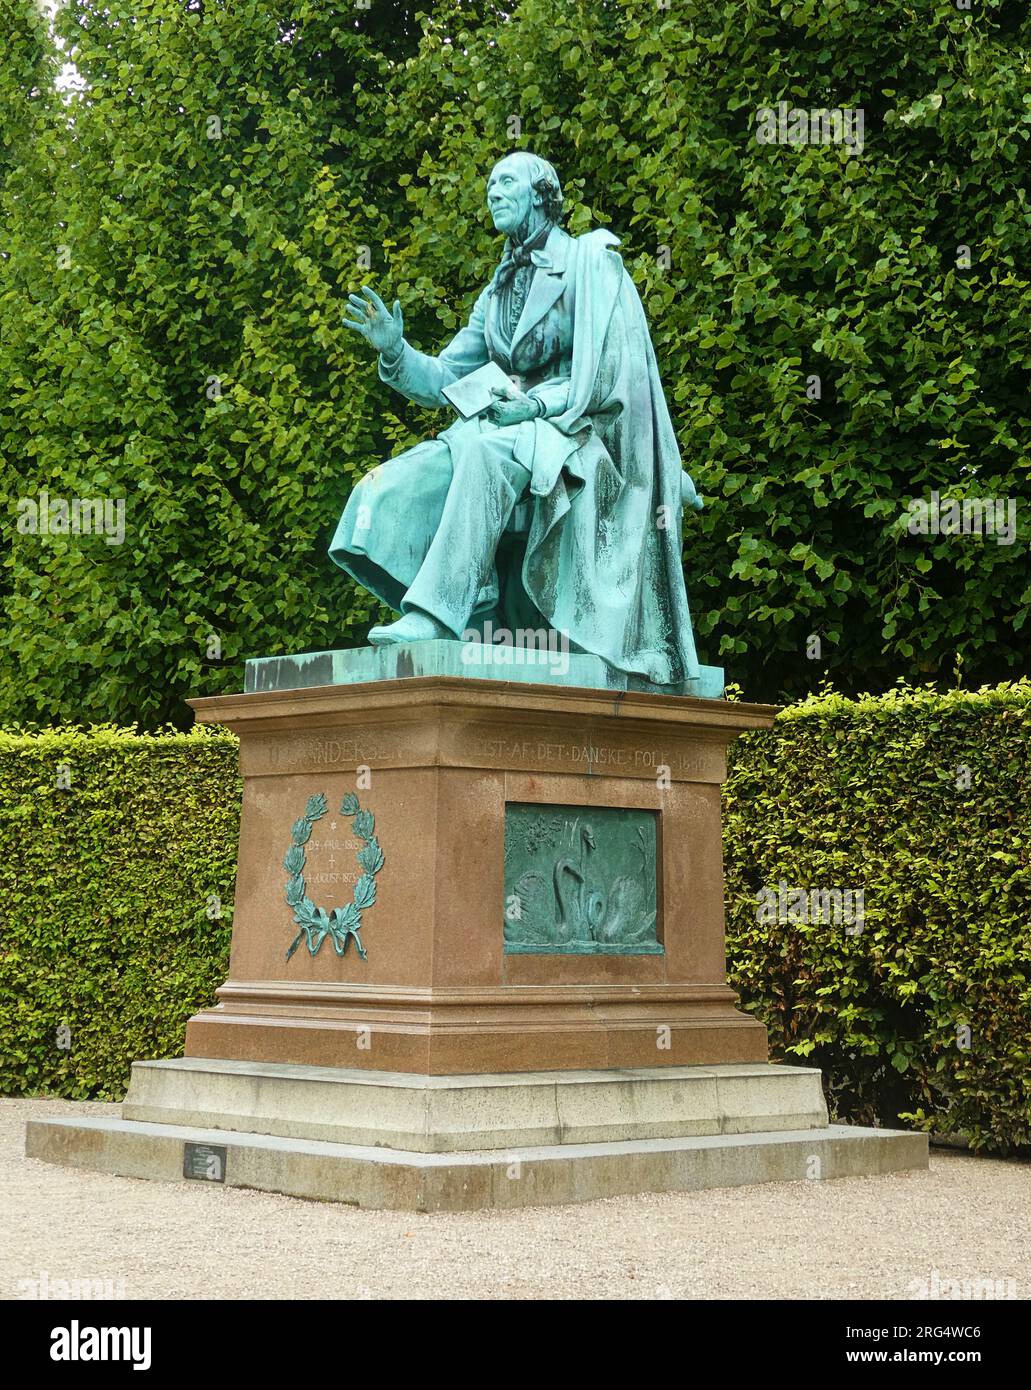 Jardin du roi de Copenhague (Kongens Have) parc public : vue latérale du monument en bronze à Hans Christian Andersen avec un livre en main, par August V. Saab Banque D'Images